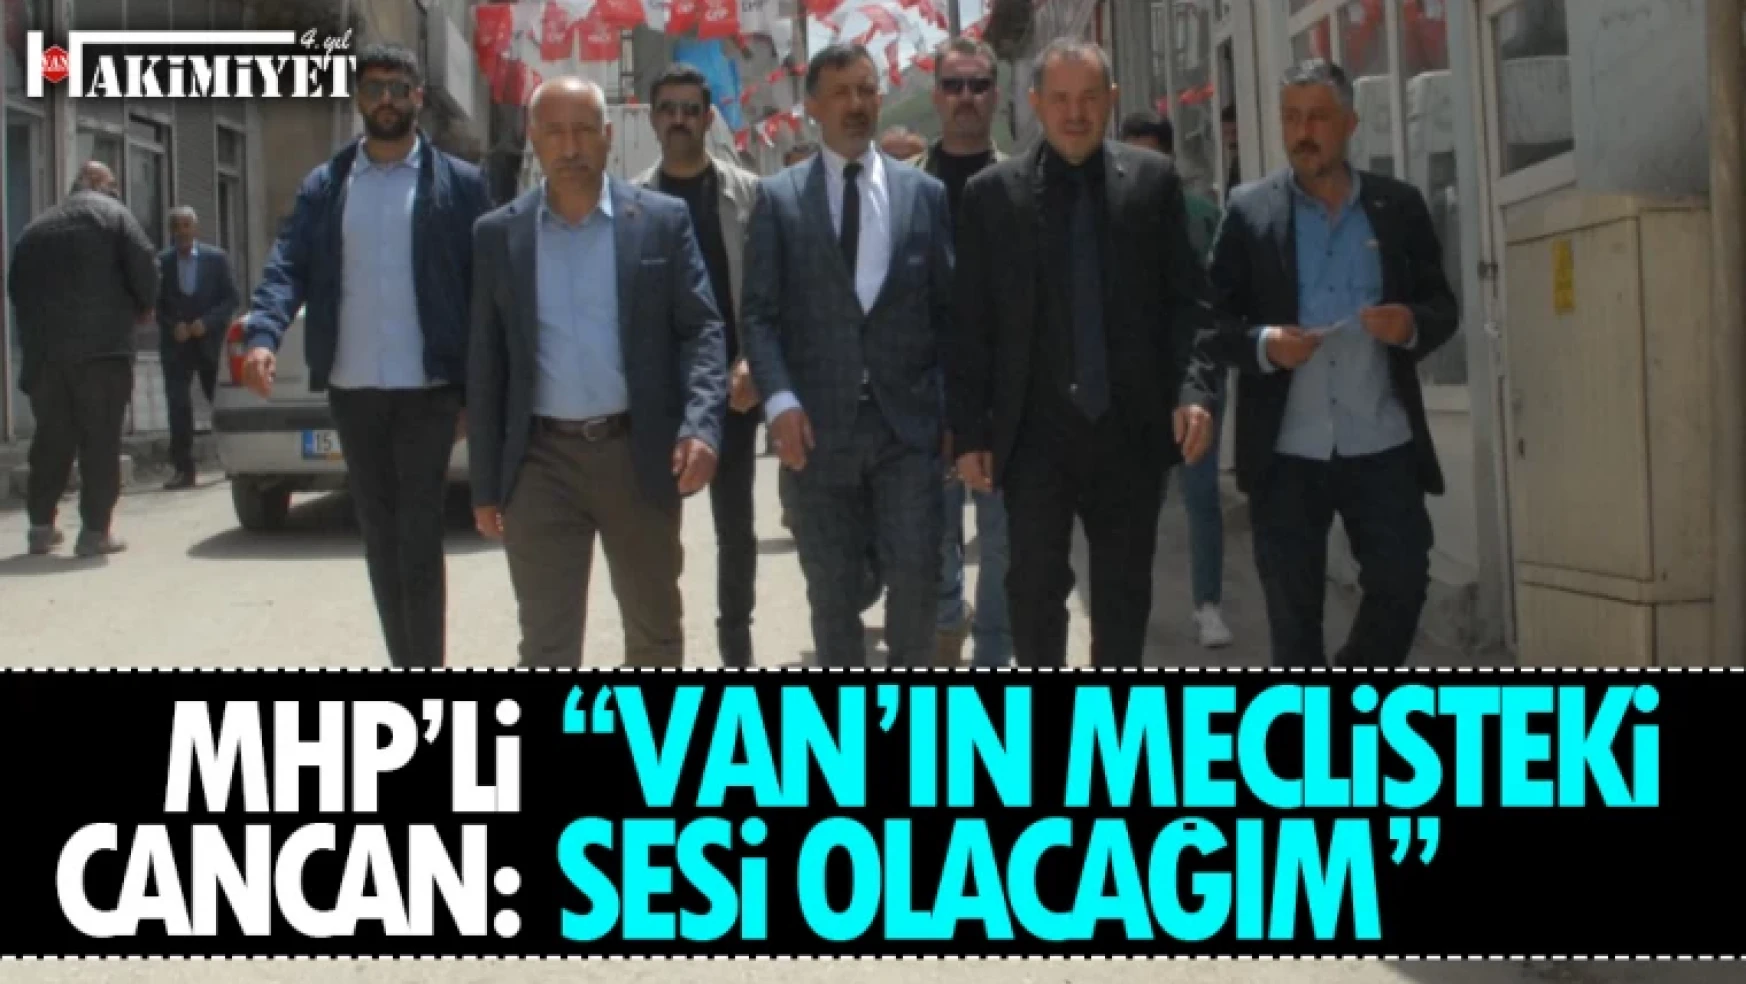 MHP Milletvekili adayı Cancan Bahçesaray halkıyla buluştu